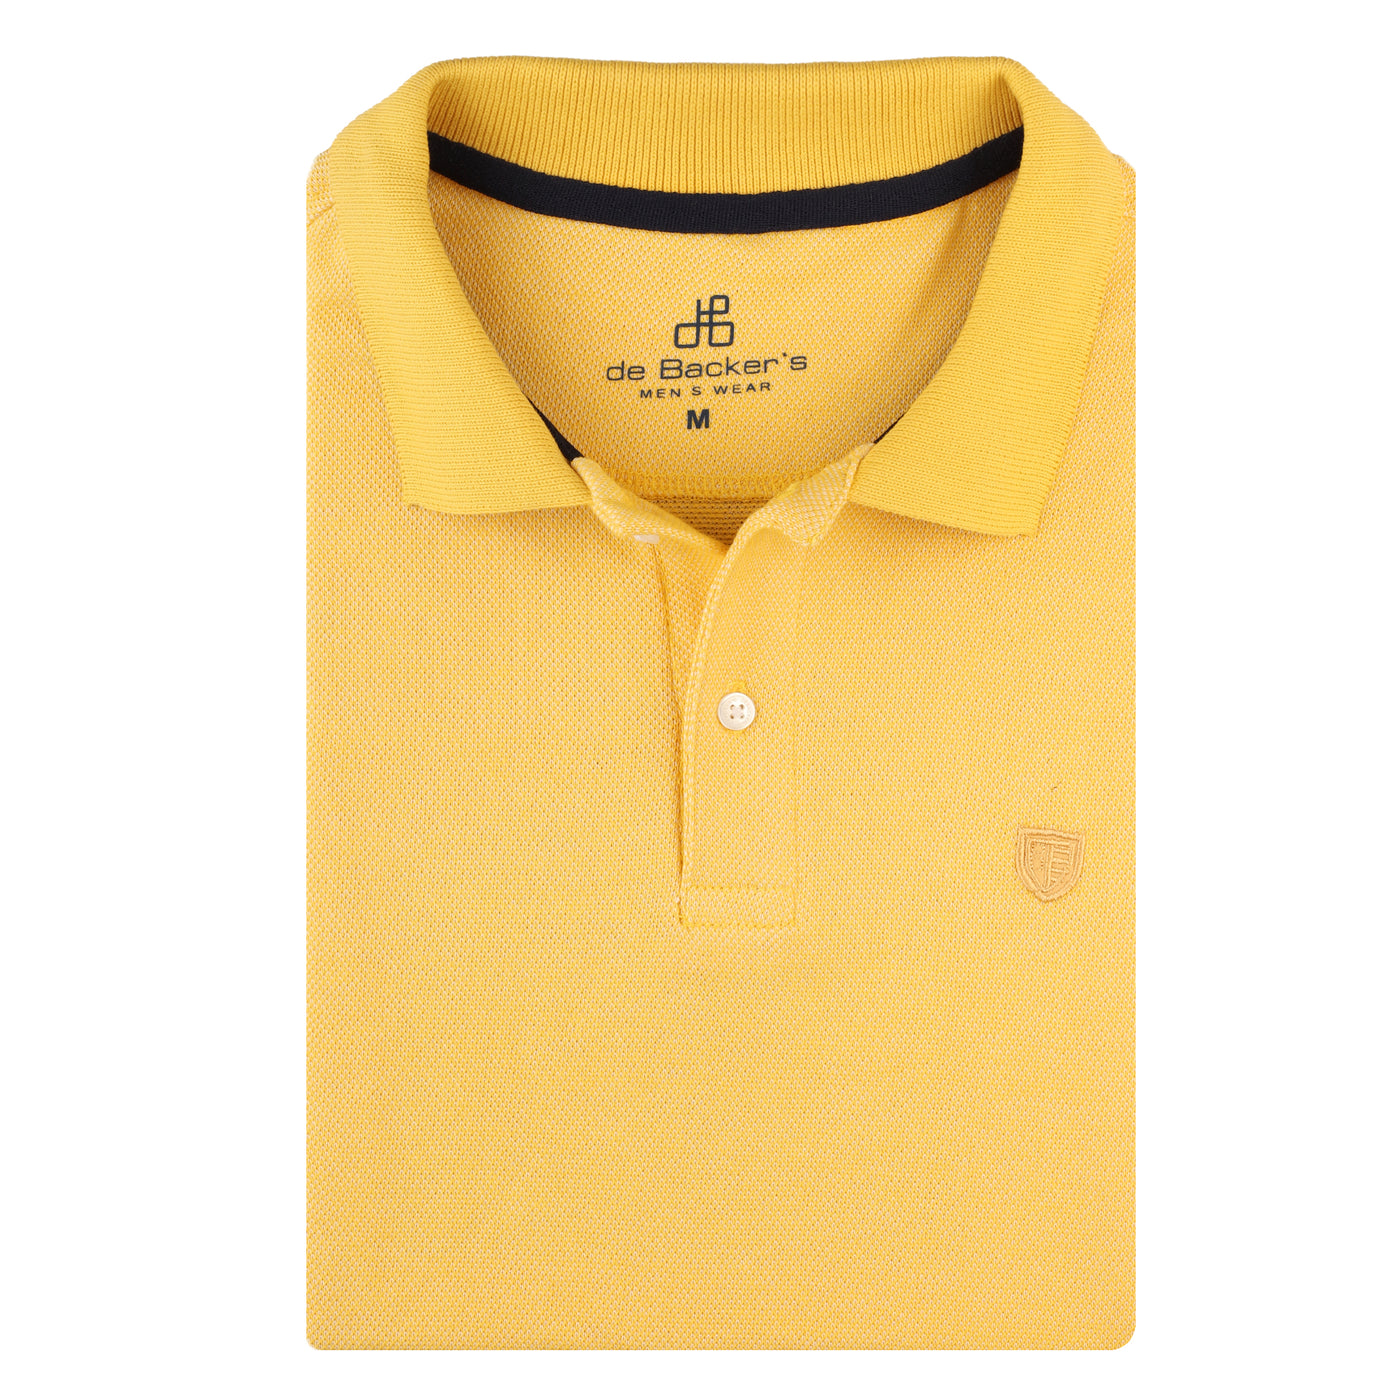 Yellow T-shirt.